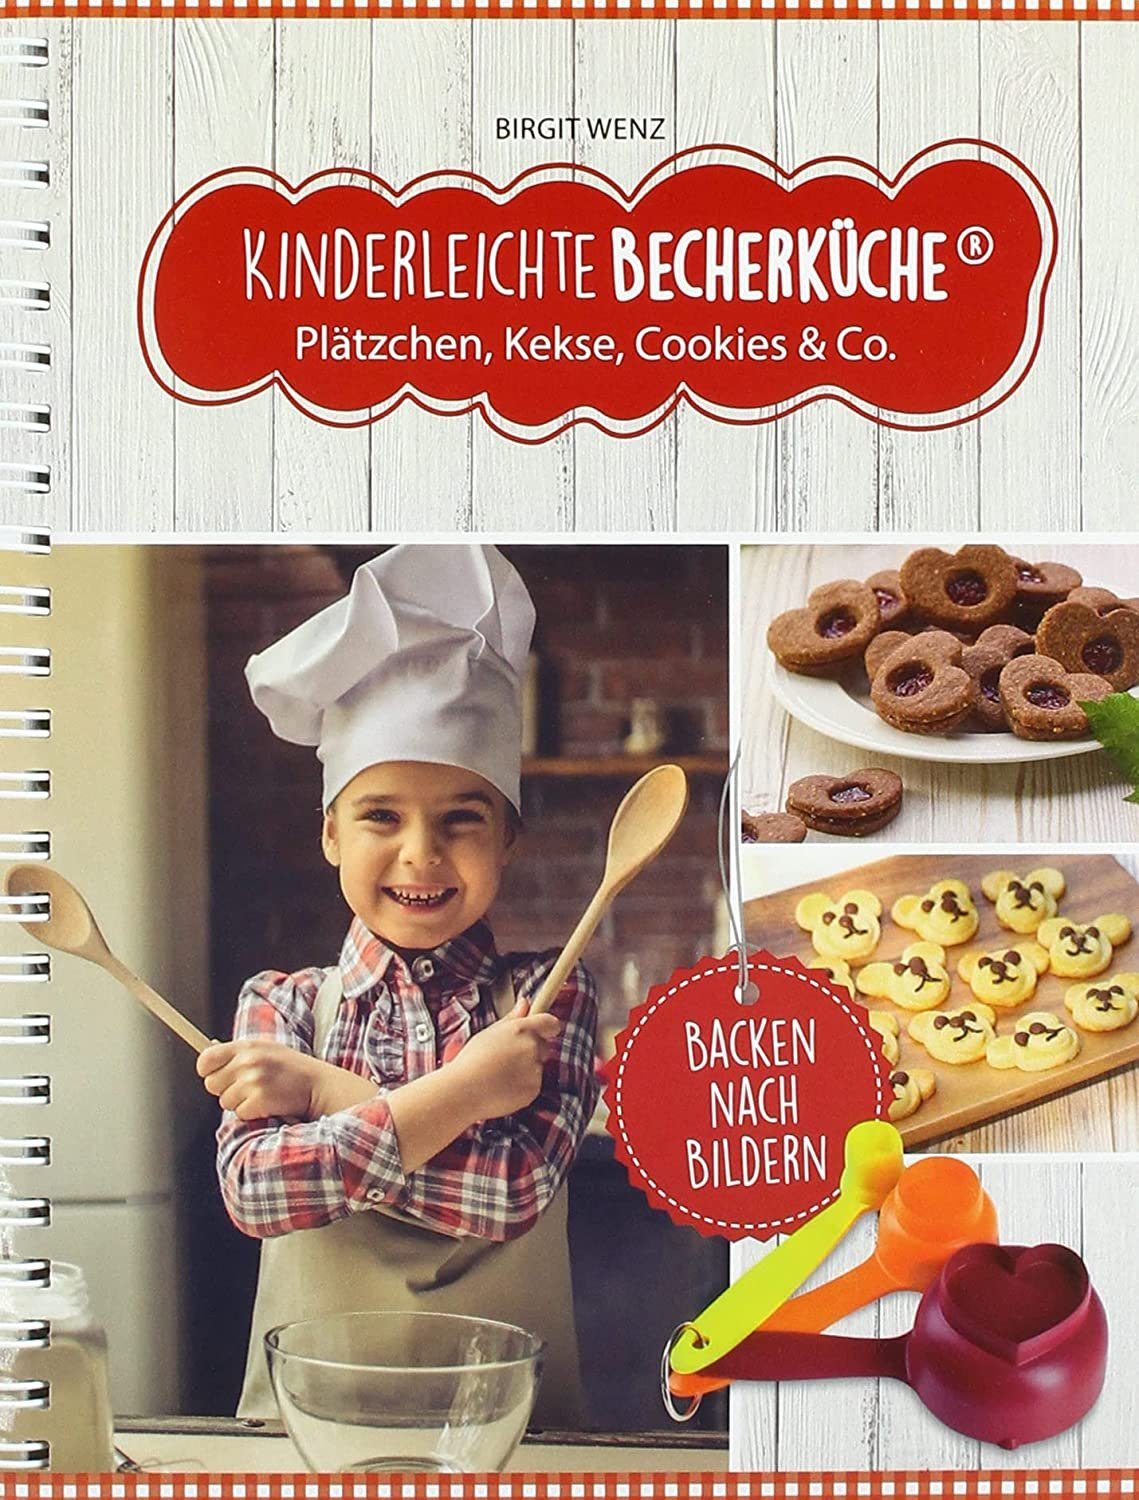 Kinderleichte Becherküche Notizbuch Co., & Kekse Cookies Plätzchen Rezeptbuch, Backbuch